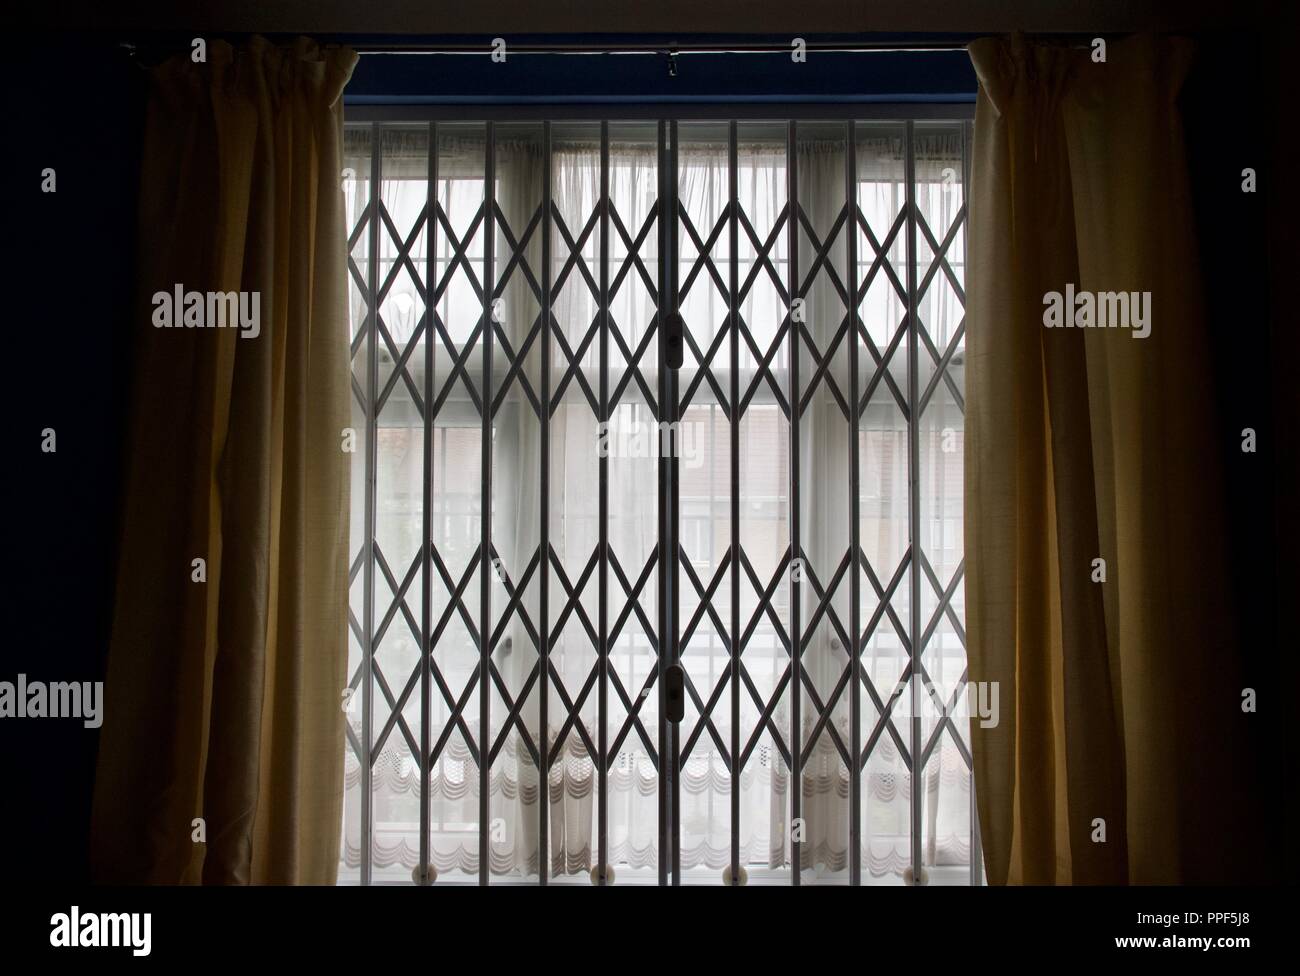 Accueil de barres de sécurité sur Windows, souvent utilisée dans des maisons dans des zones dangereuses pour protéger contre les cambrioleurs Banque D'Images